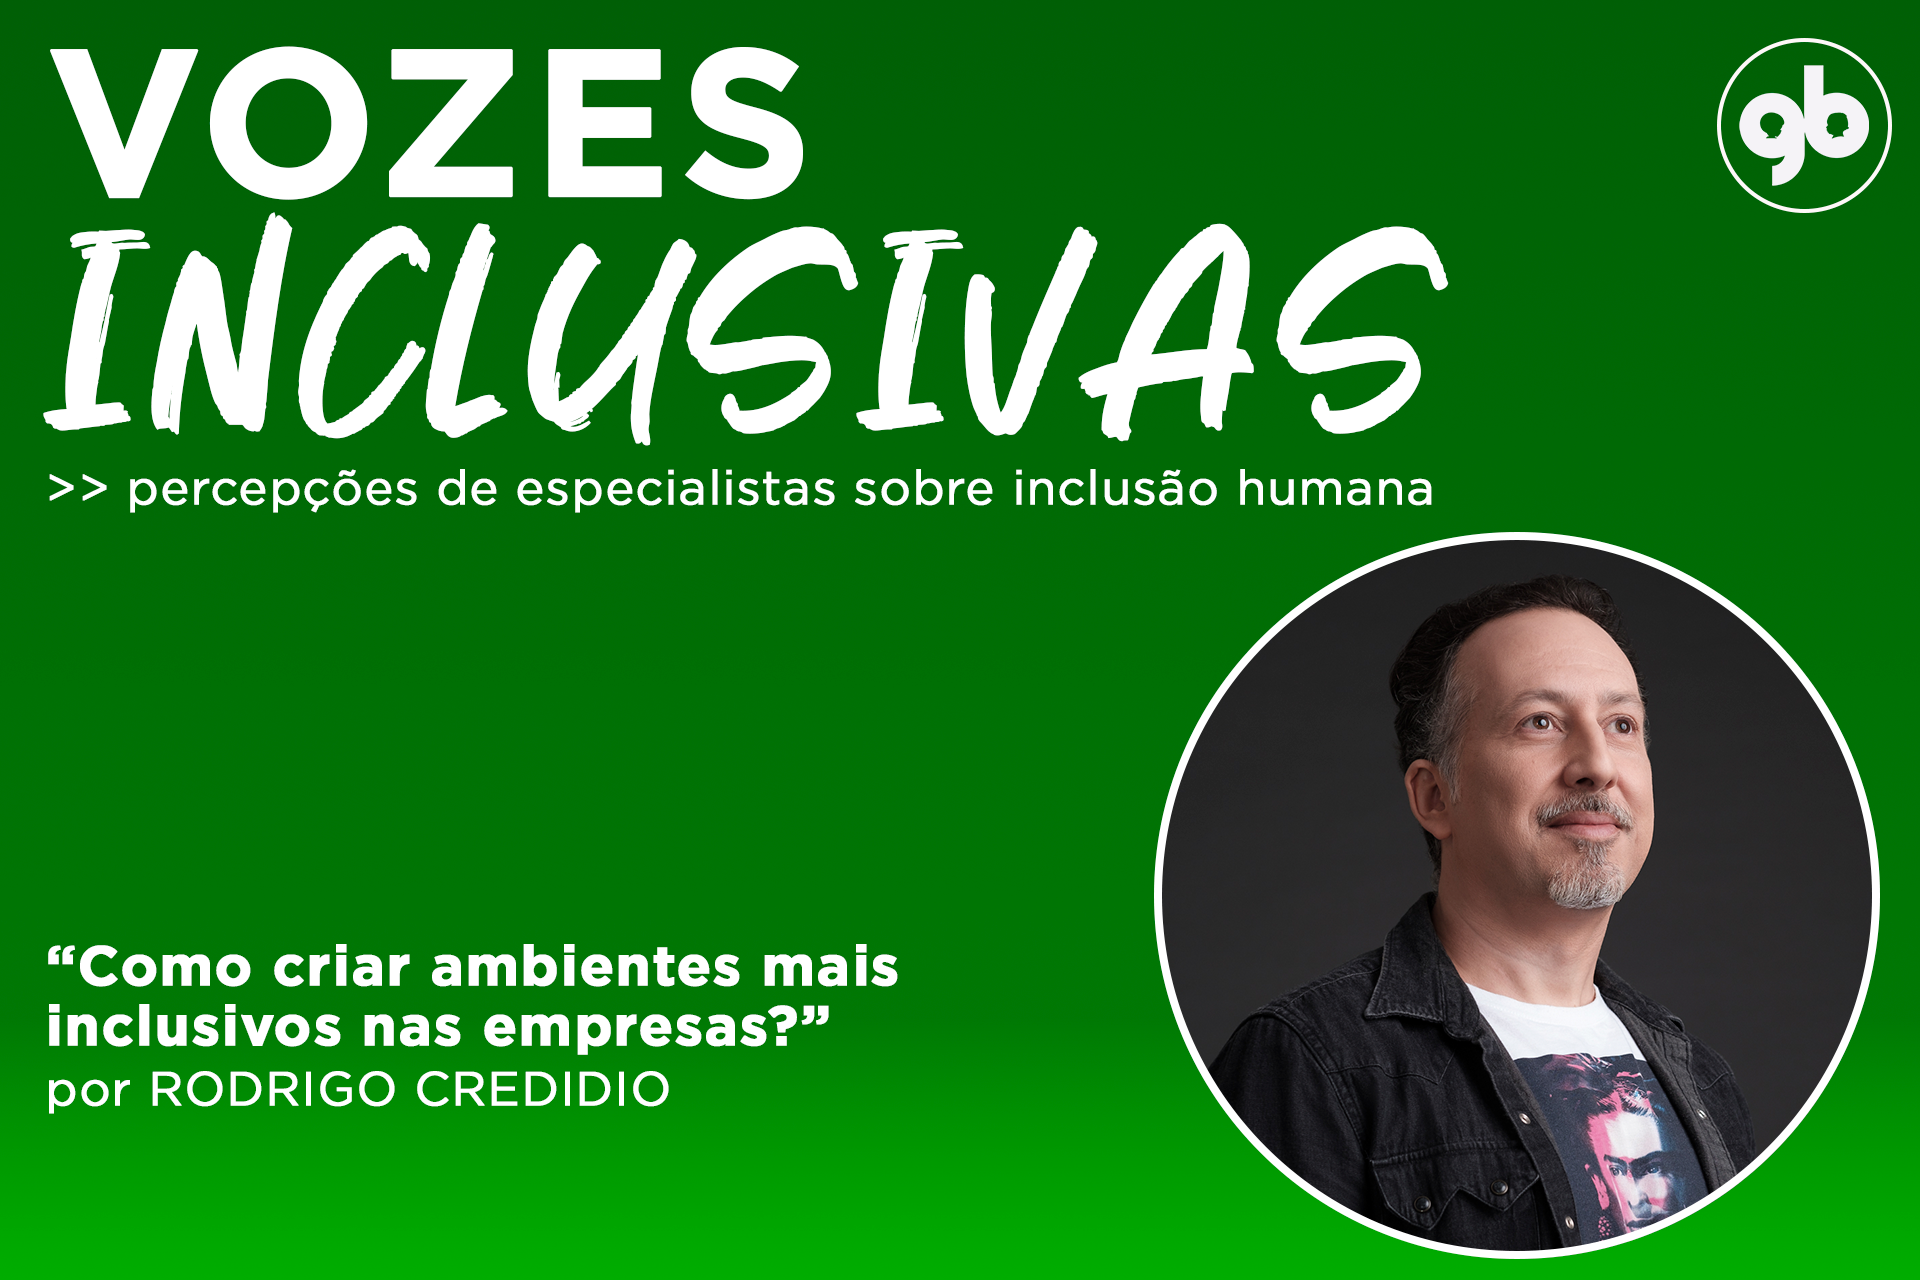 sobre fundo degradê do verde escuro ao claro, o título Vozes Inclusivas em branco e foto de Rodrigo à direita